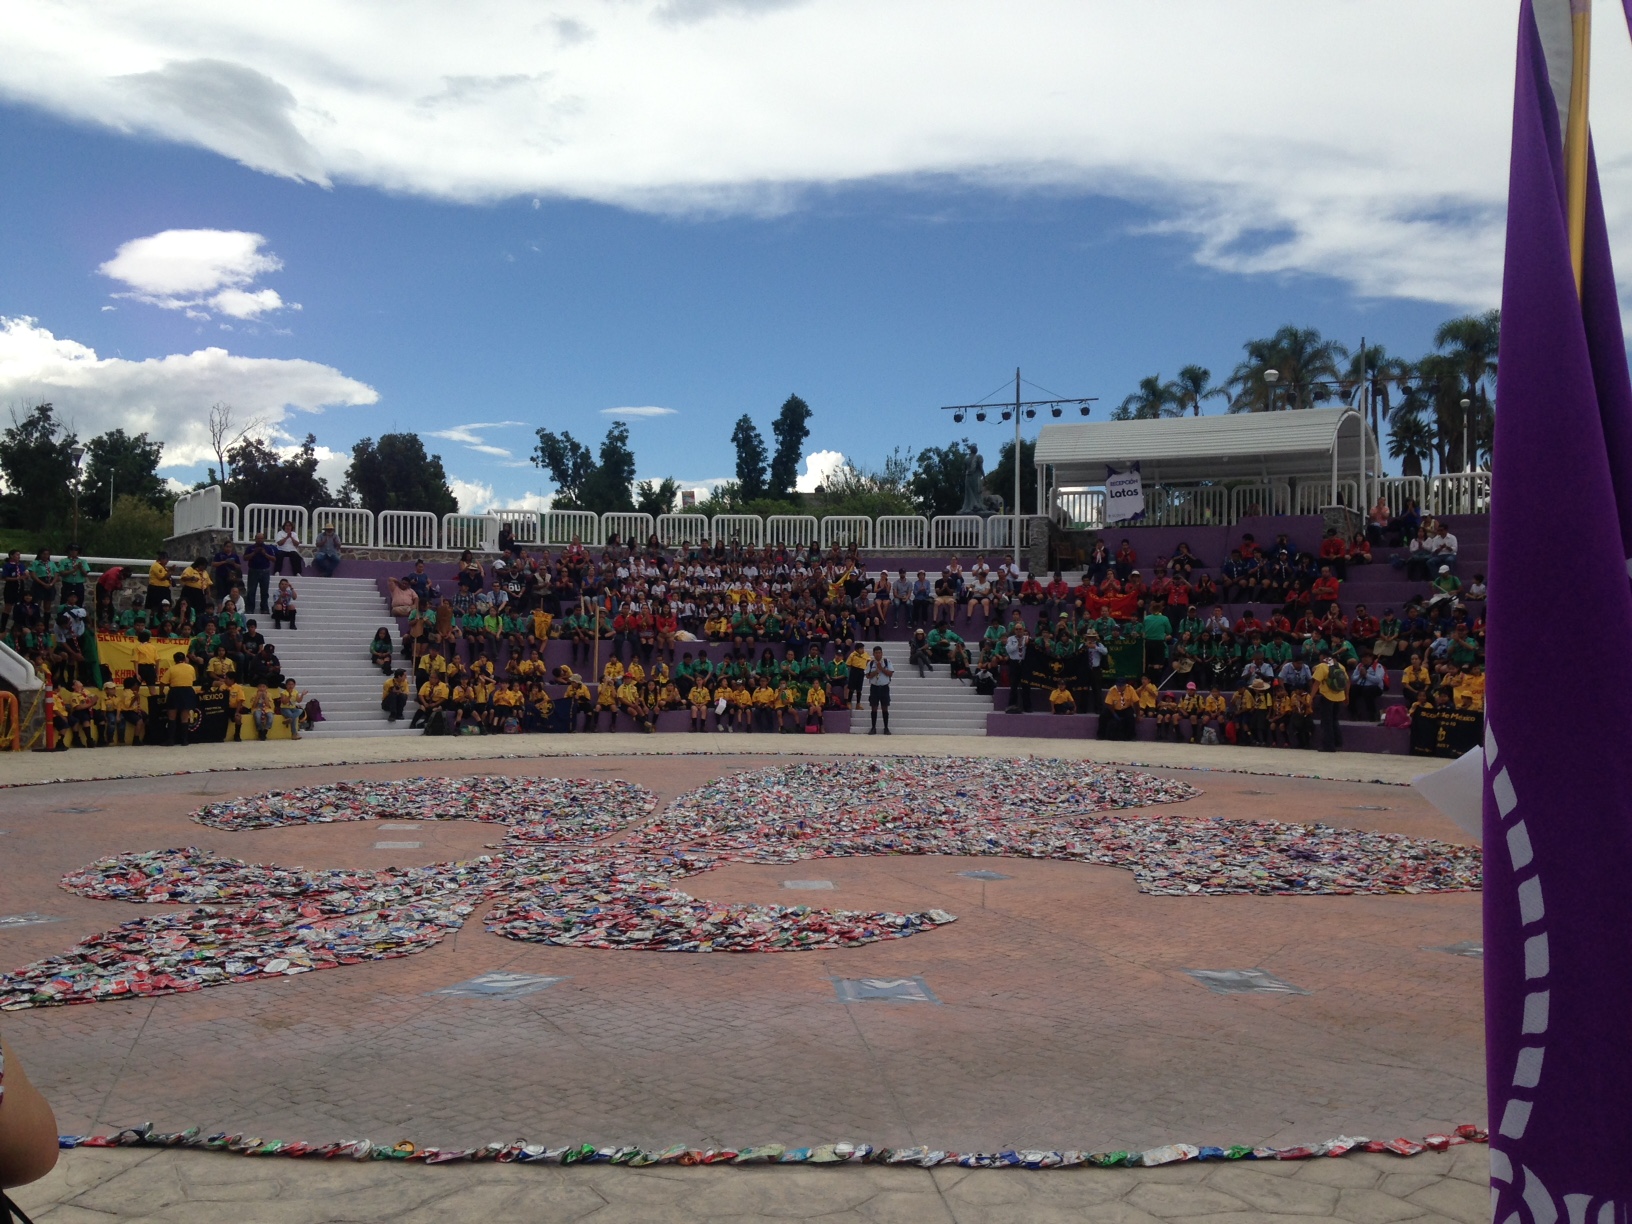  Forman scouts la flor de lis “más grande de Querétaro” con latas de aluminio